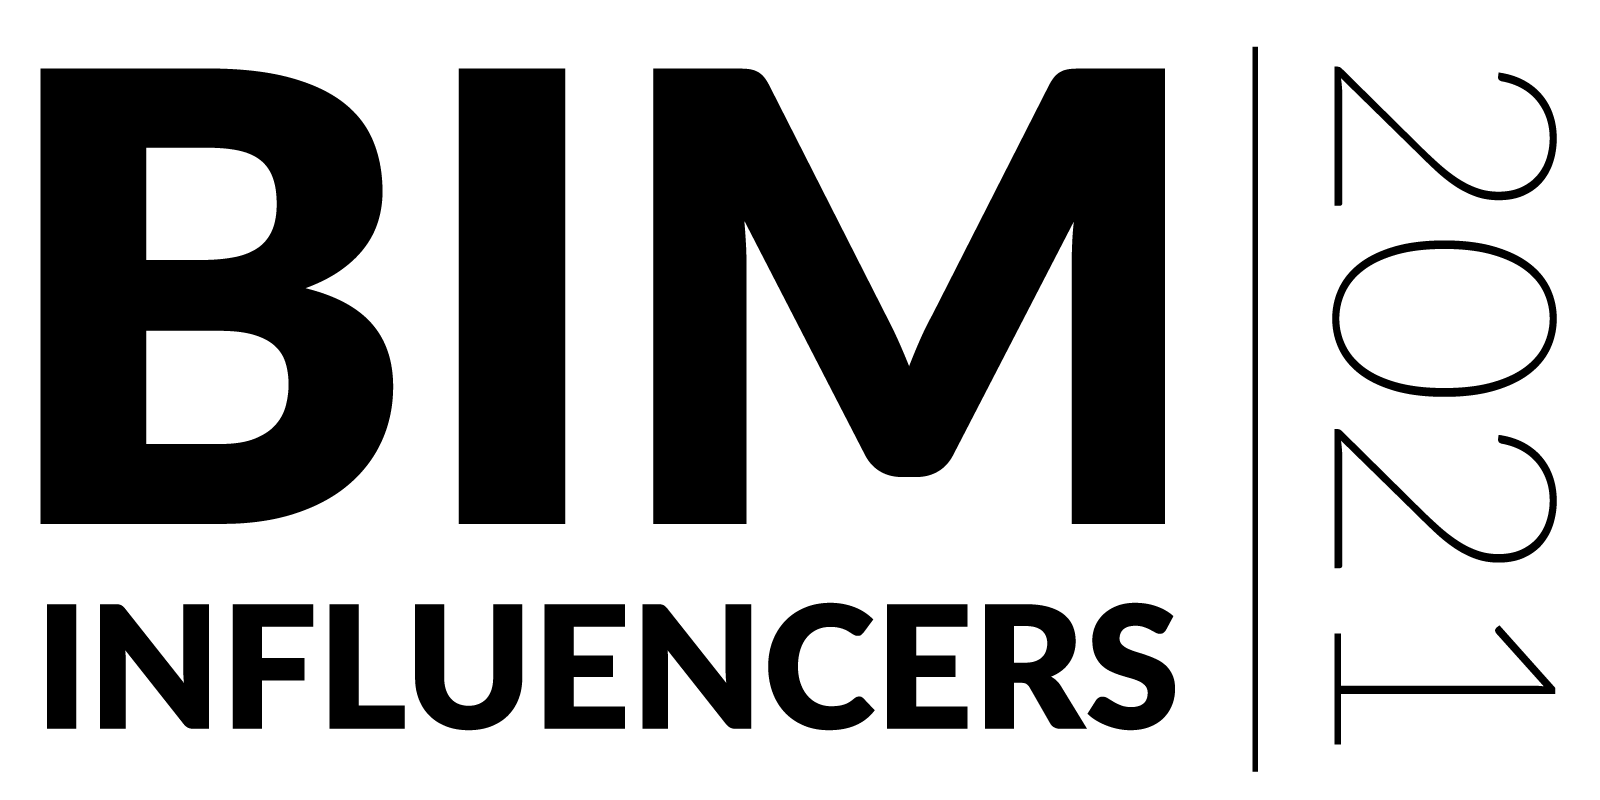 BIM influencers 2021